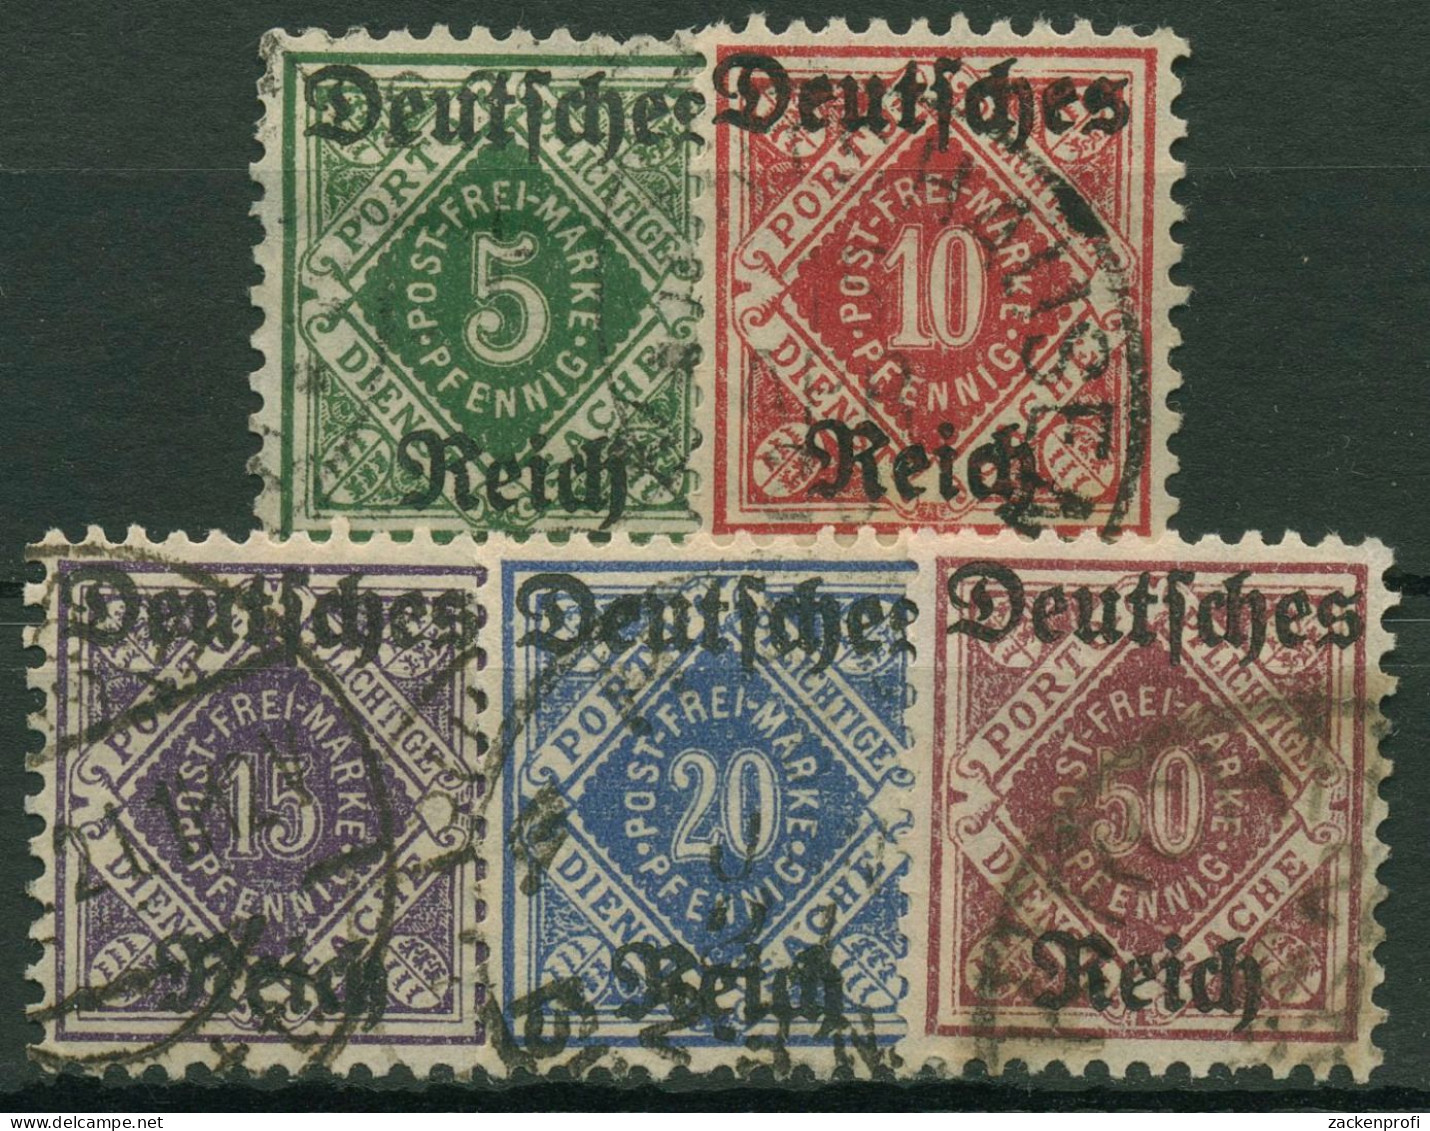 Deutsches Reich Dienstmarken Württemberg Mit Aufdruck 1920 D 52/56 Gestempelt - Officials